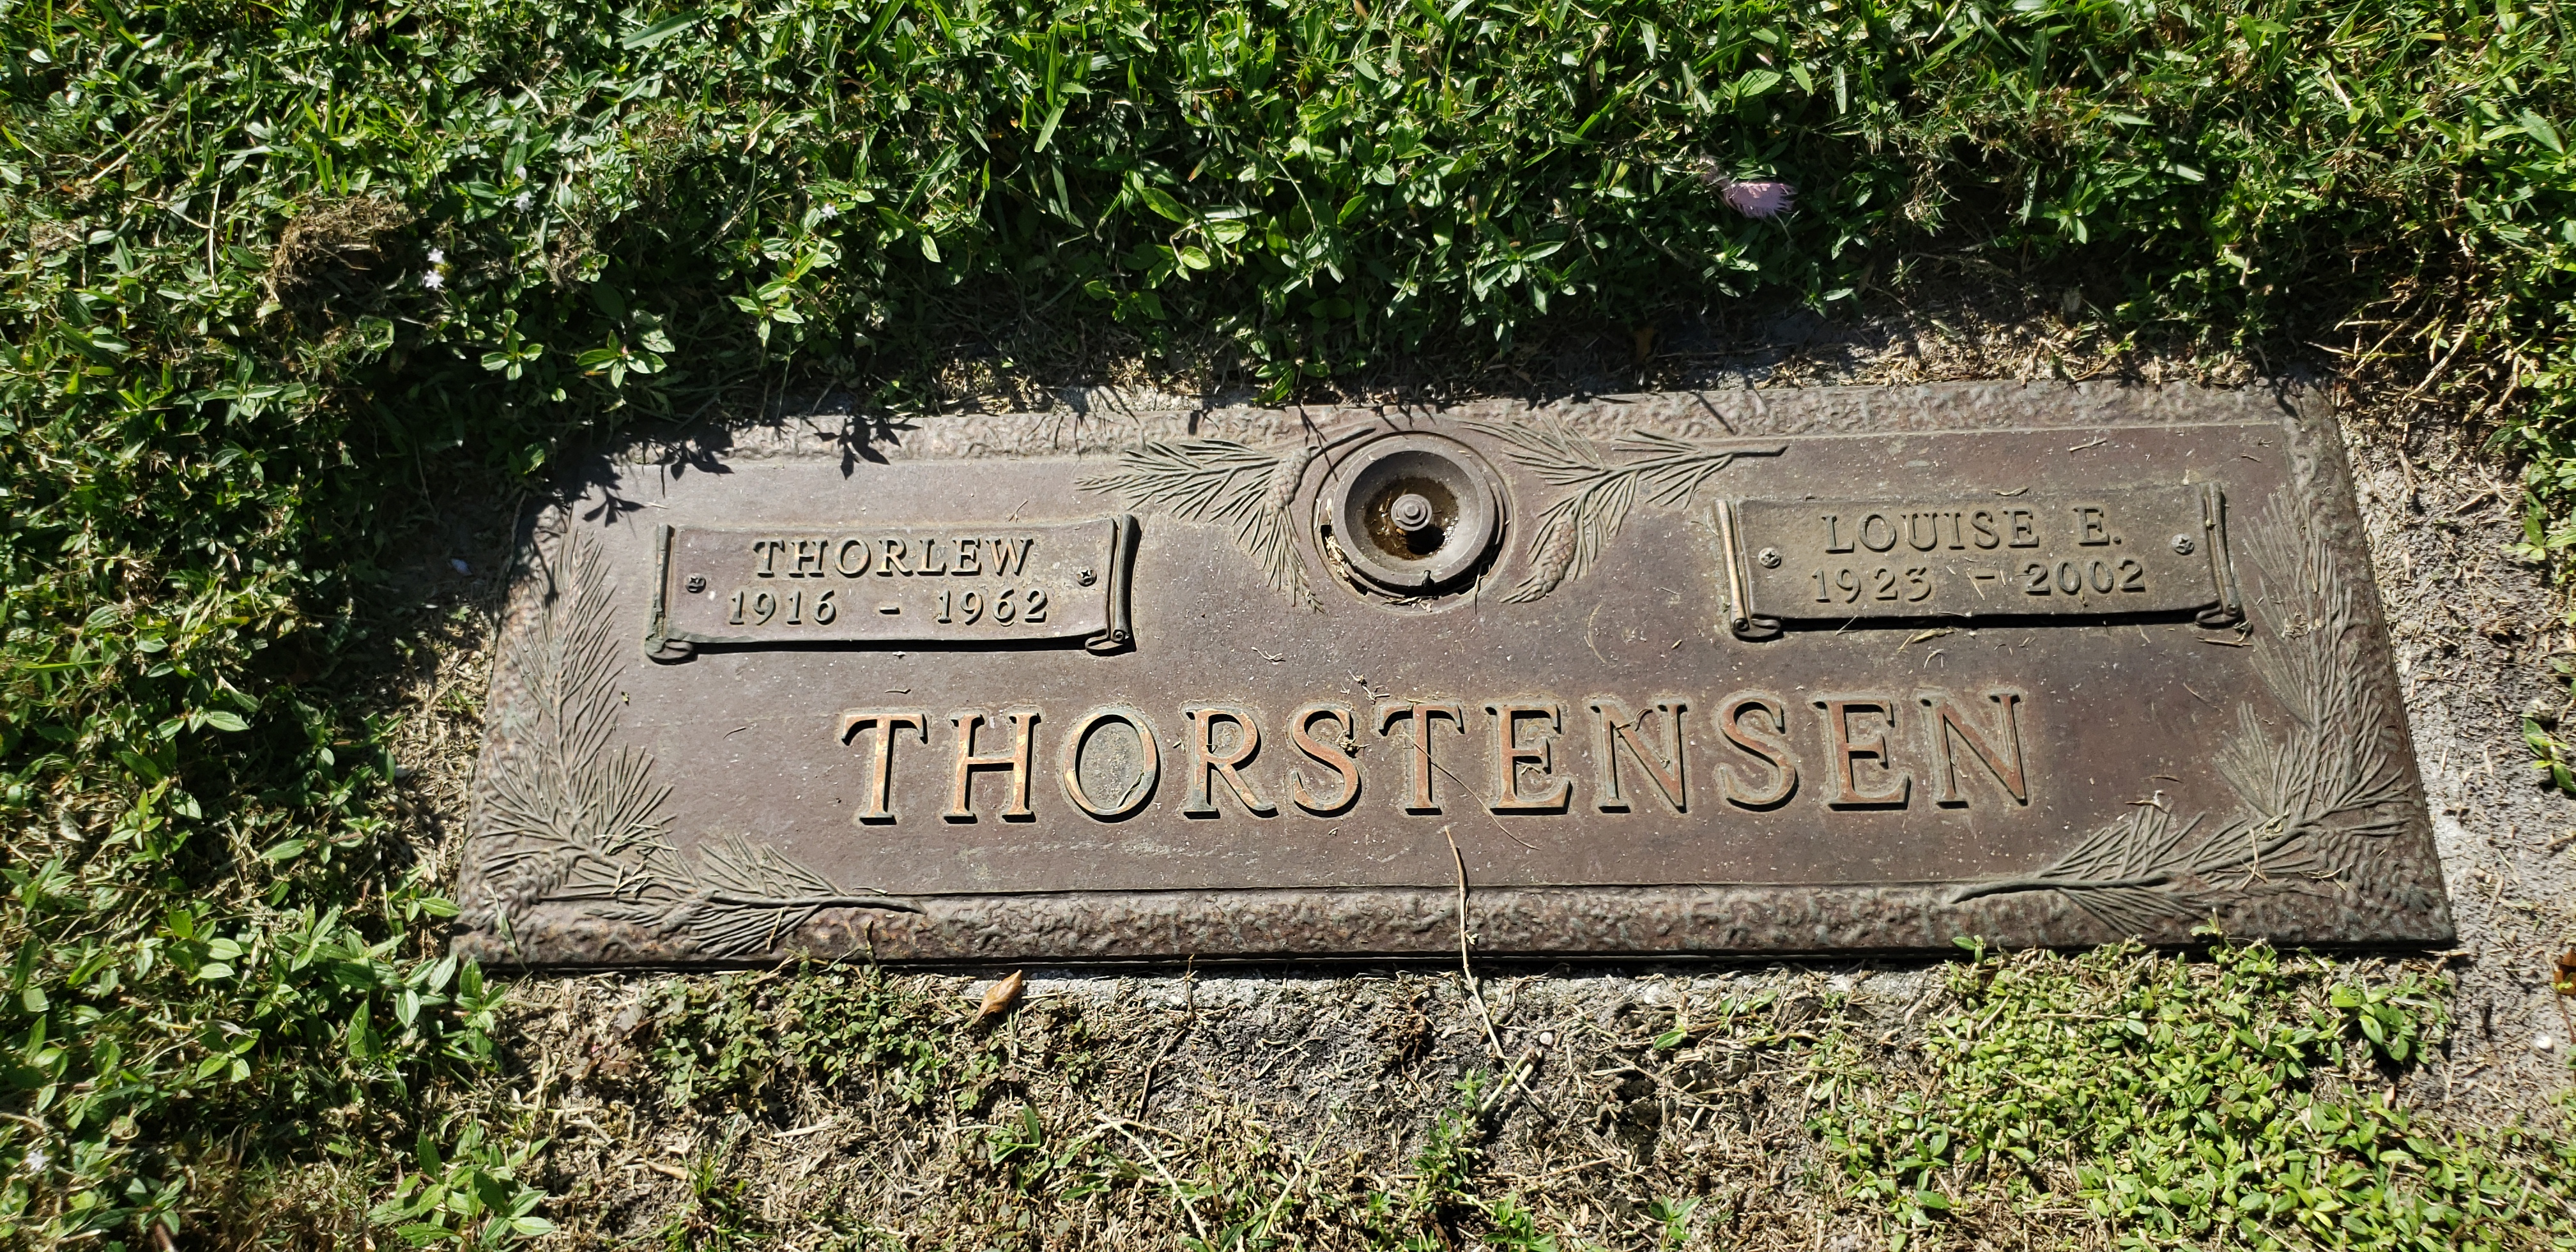 Thorlew Thorstensen